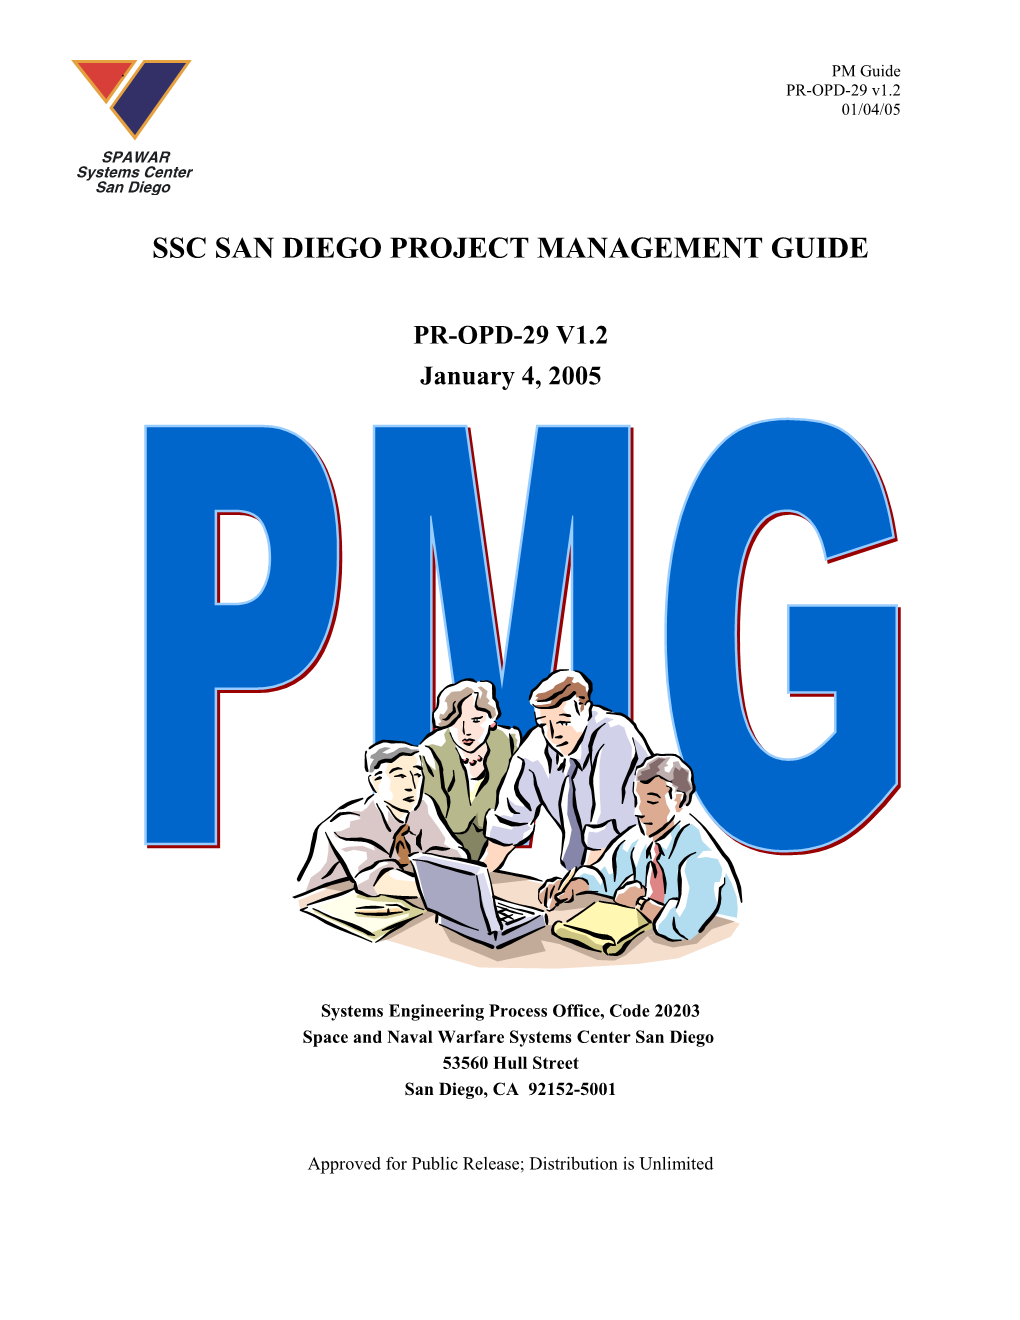 SSC Project Management Guide, PR-OPD-29 V1.2, 01/04/05, Signed